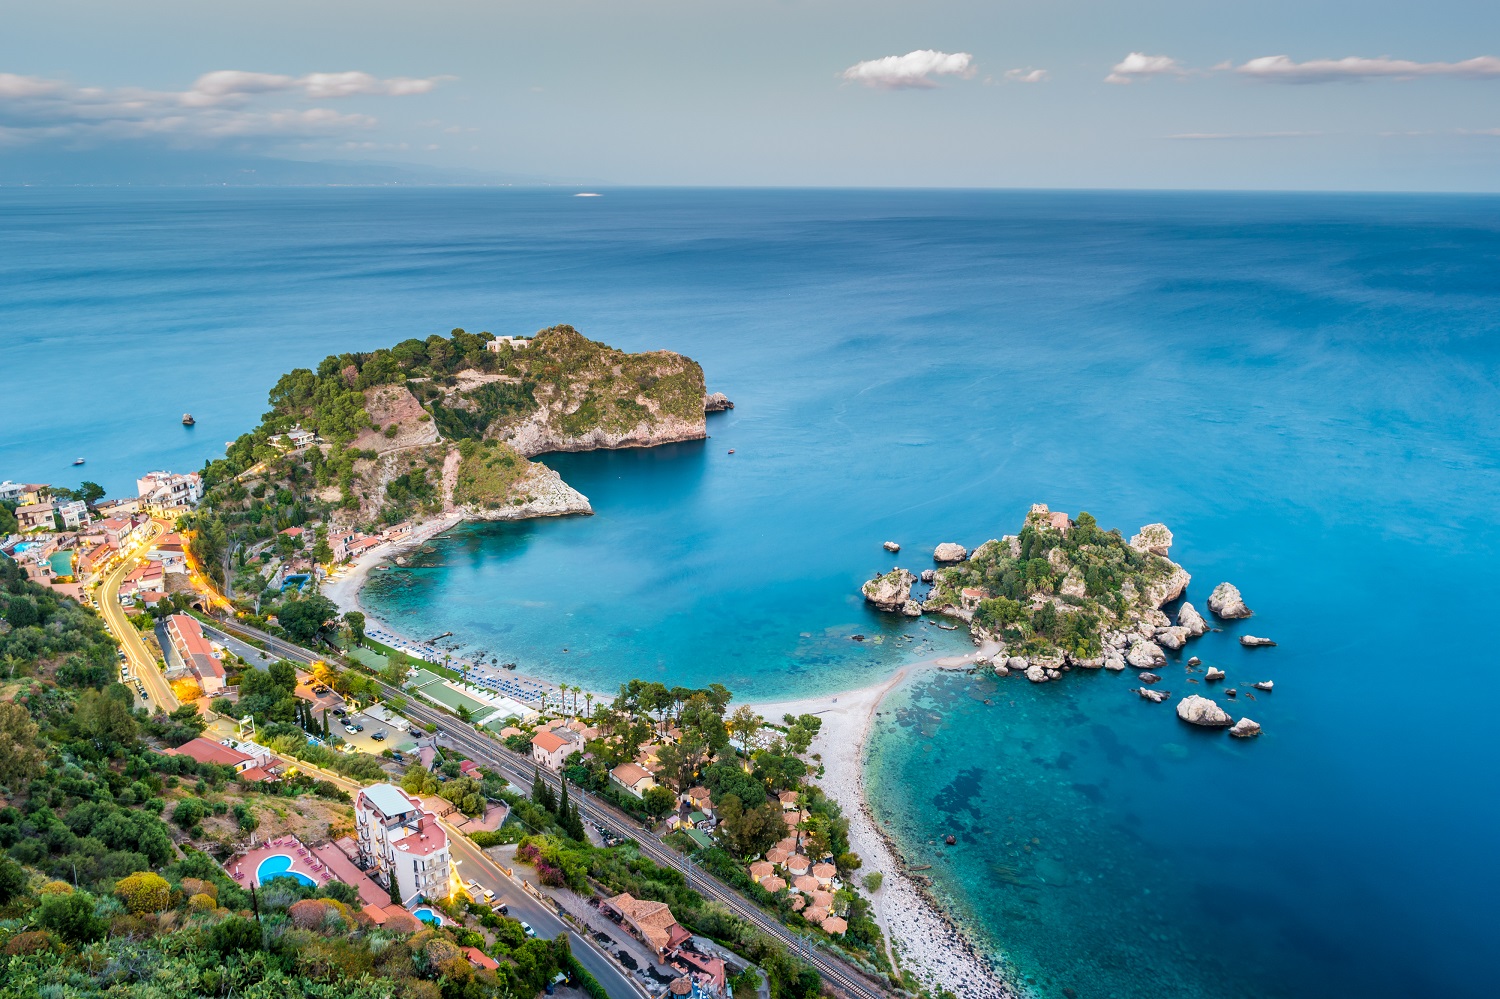 Sicilian Coast